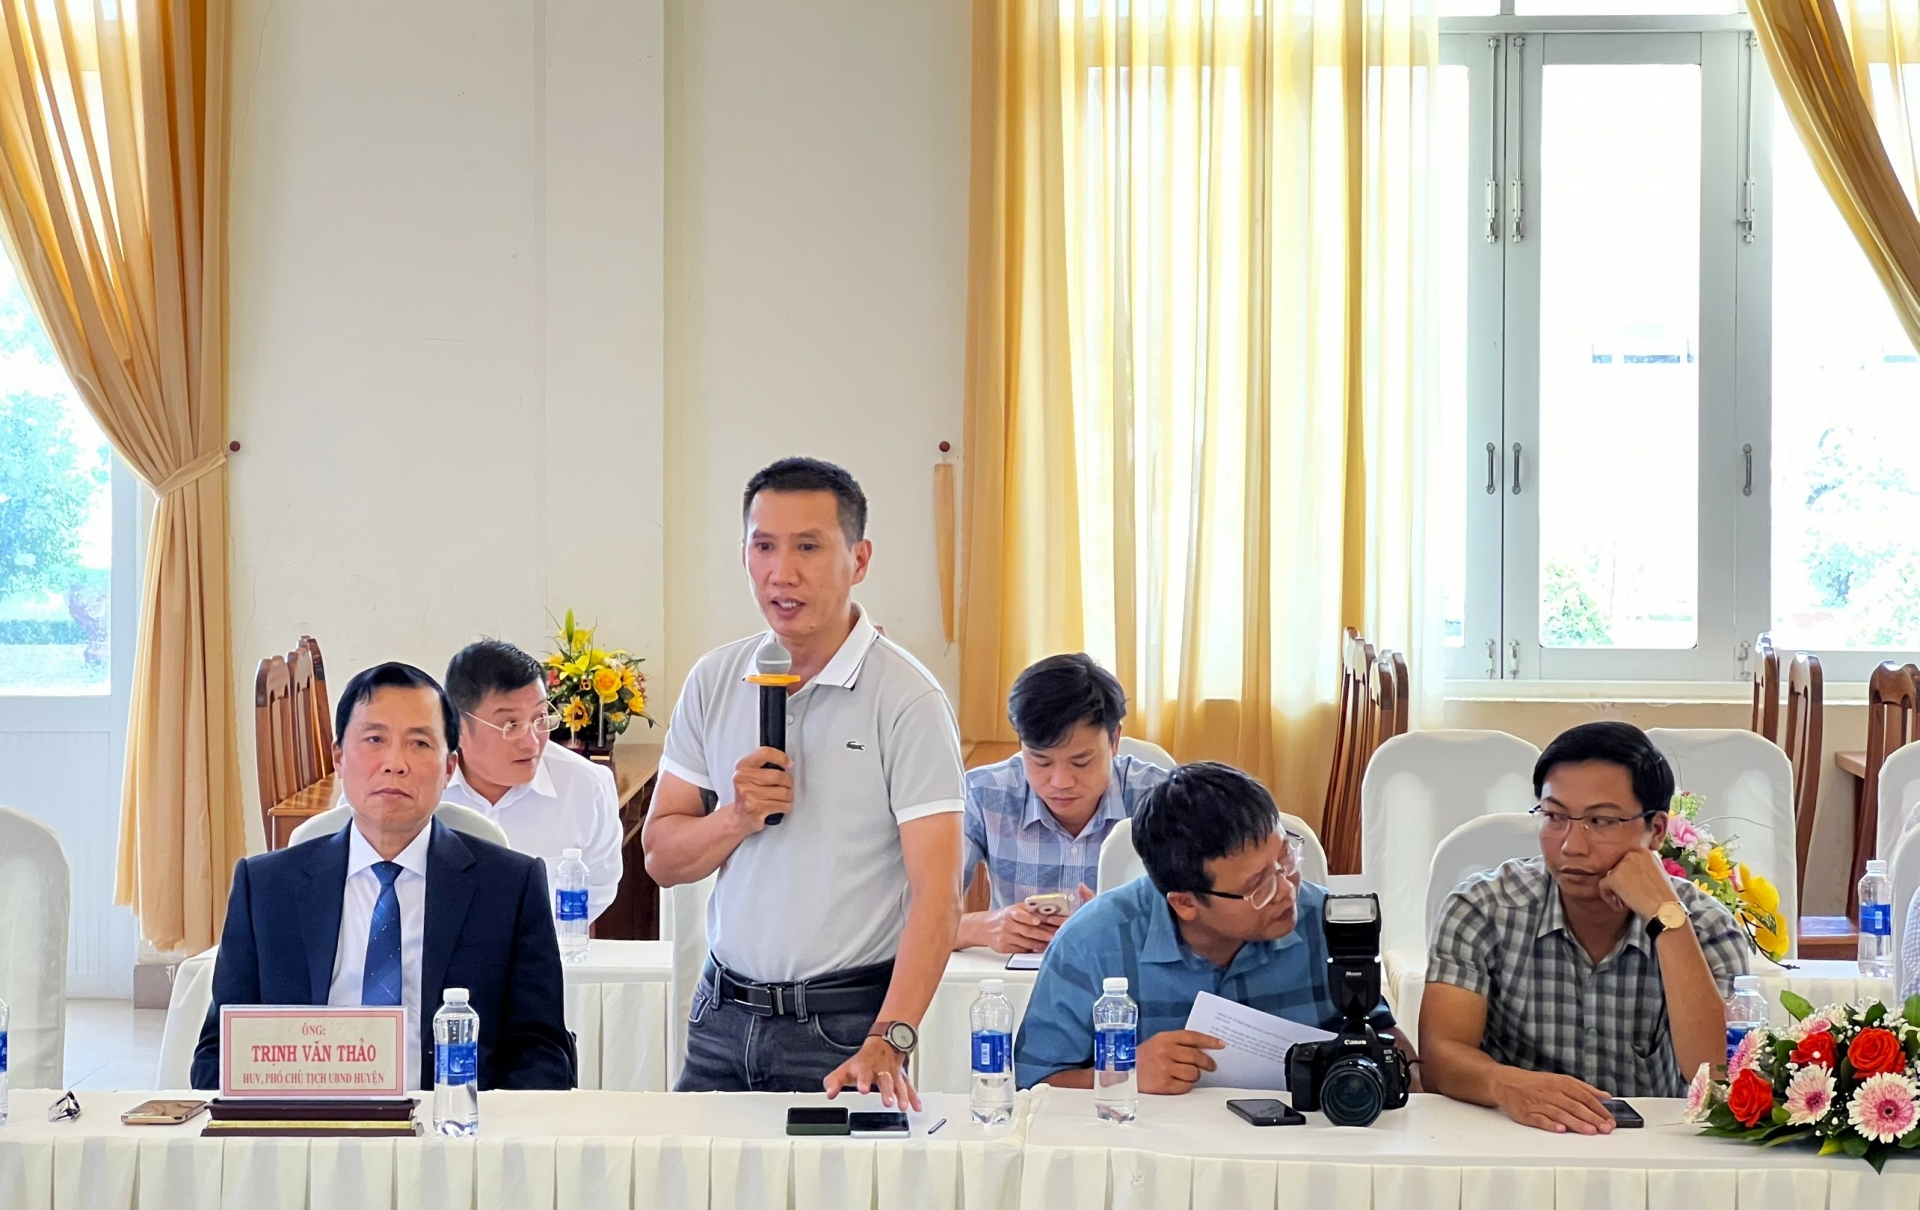 Nhà báo Nguyễn Hữu Sang - Trưởng phòng Bảo Điện tử Báo Lâm Đồng phát biểu tại buổi gặp mặt